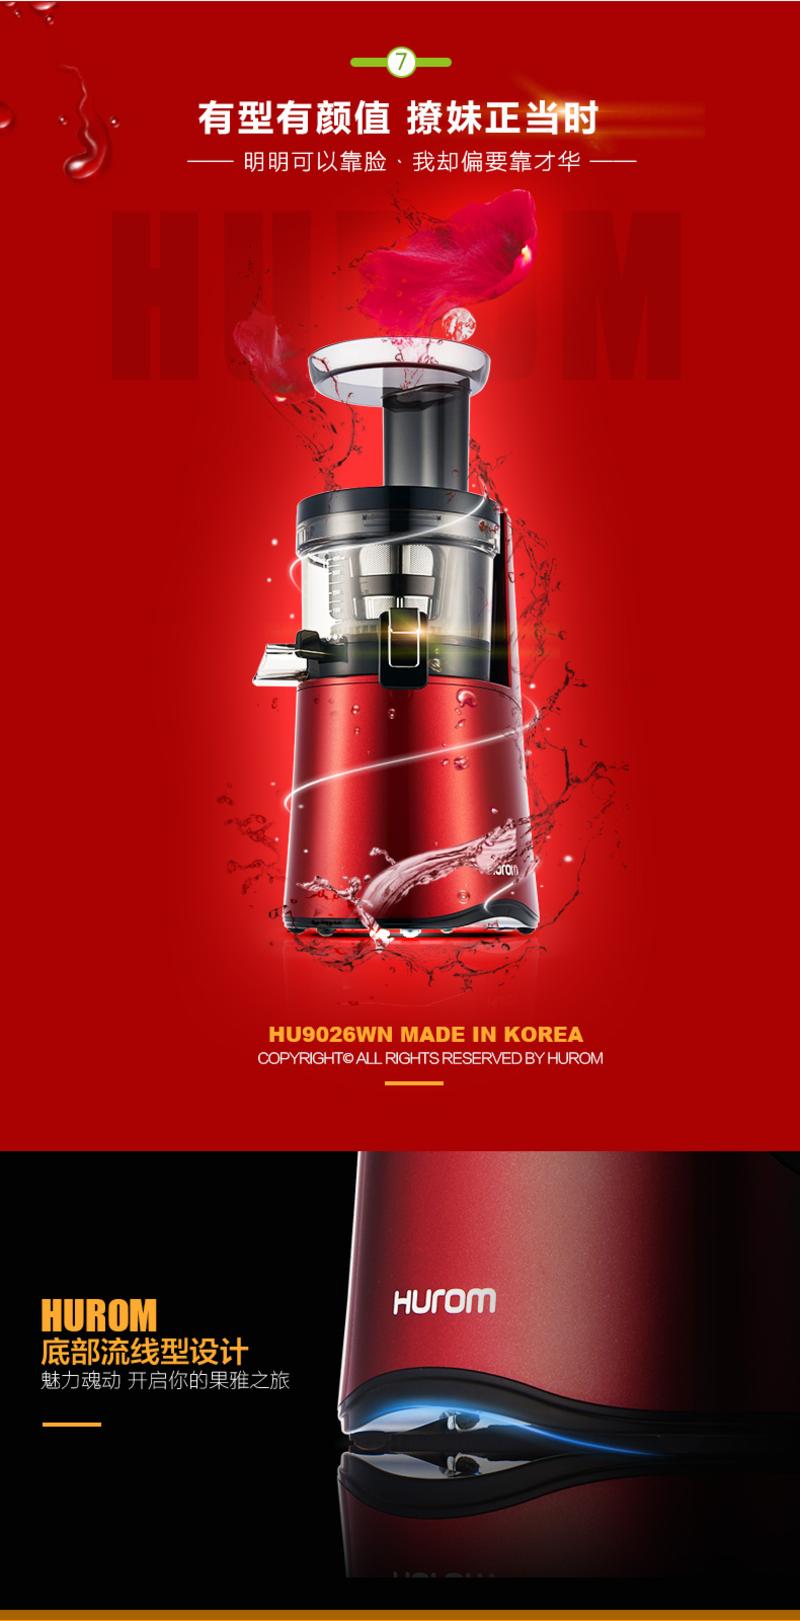 【三代高配】hurom/惠人原汁机HU9026WN家用榨汁机进口原装正品